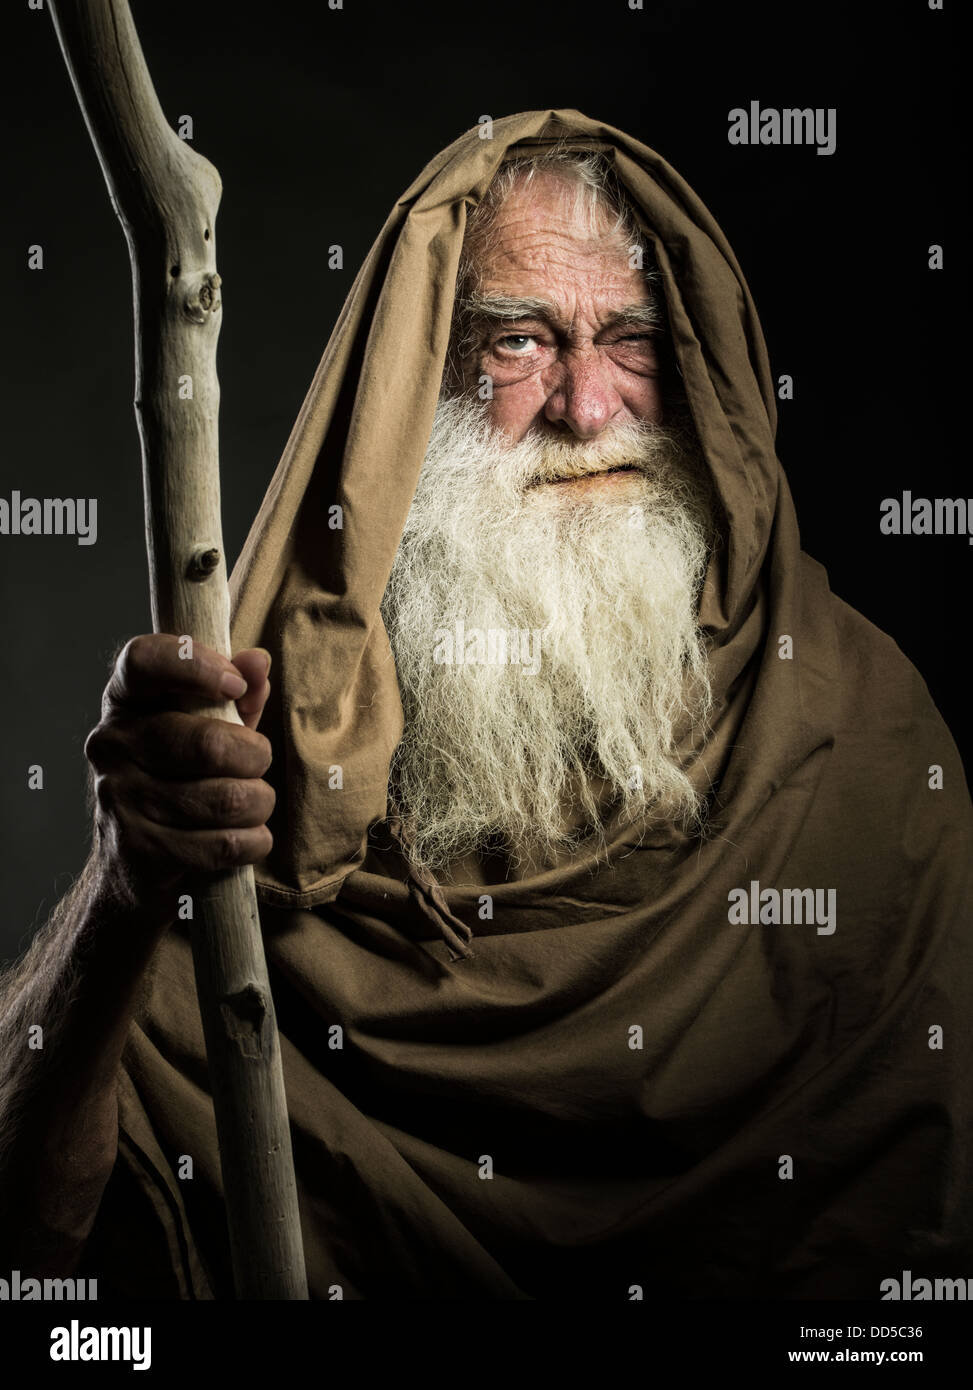 Alter Mann mit weißem Bart Personal und Mantel sieht aus wie Assistenten / Gandalf / Moses / Dumbledore Stockfoto